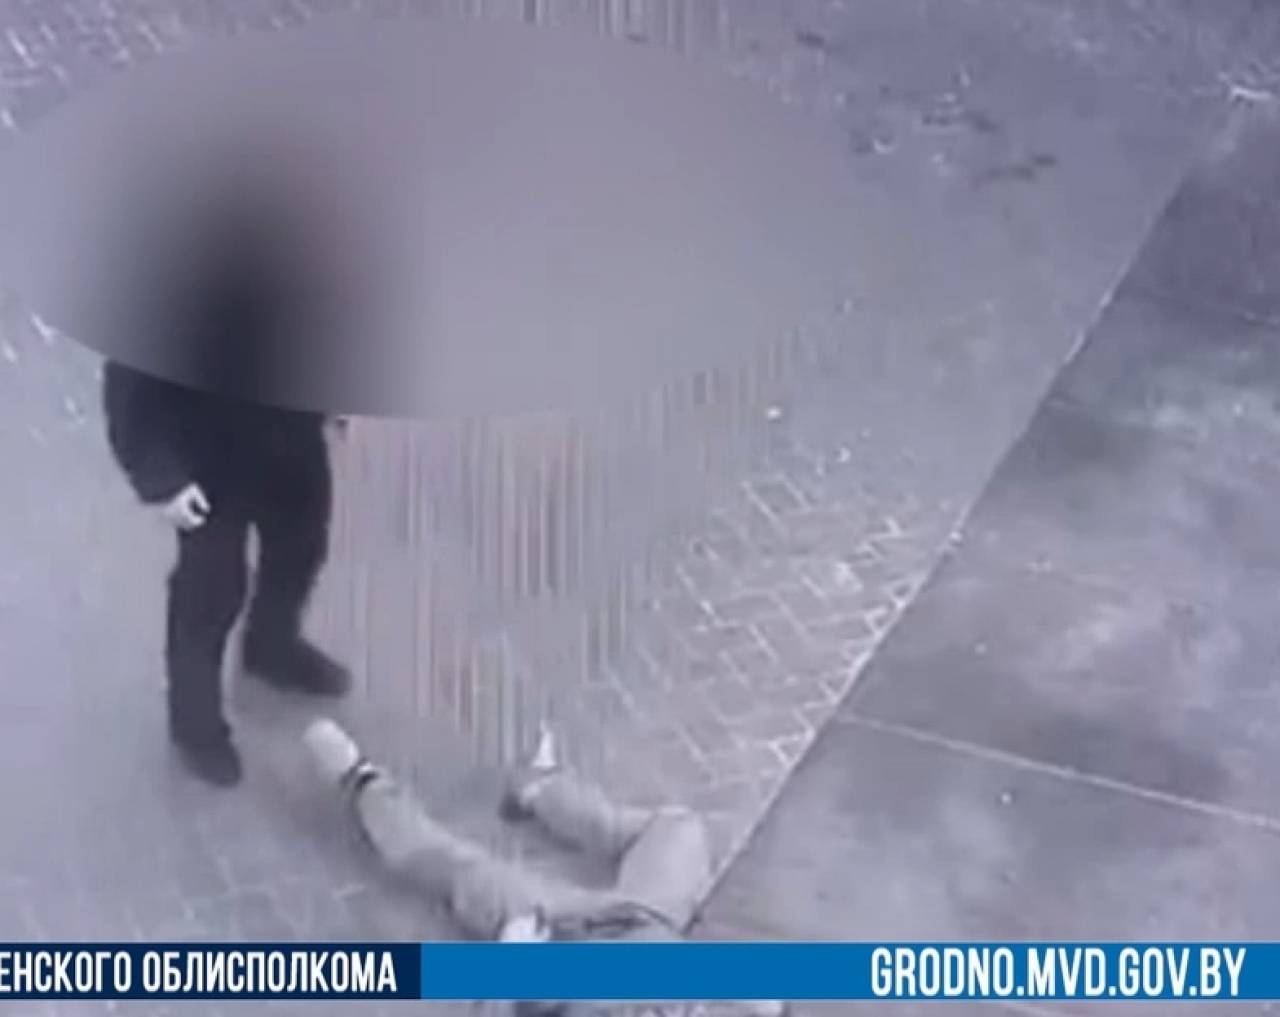 В Гродно подросток попросил закурить у нетрезвого мужчины, а потом избил его прямо под камерами ТЦ. Возбуждено уголовное дело